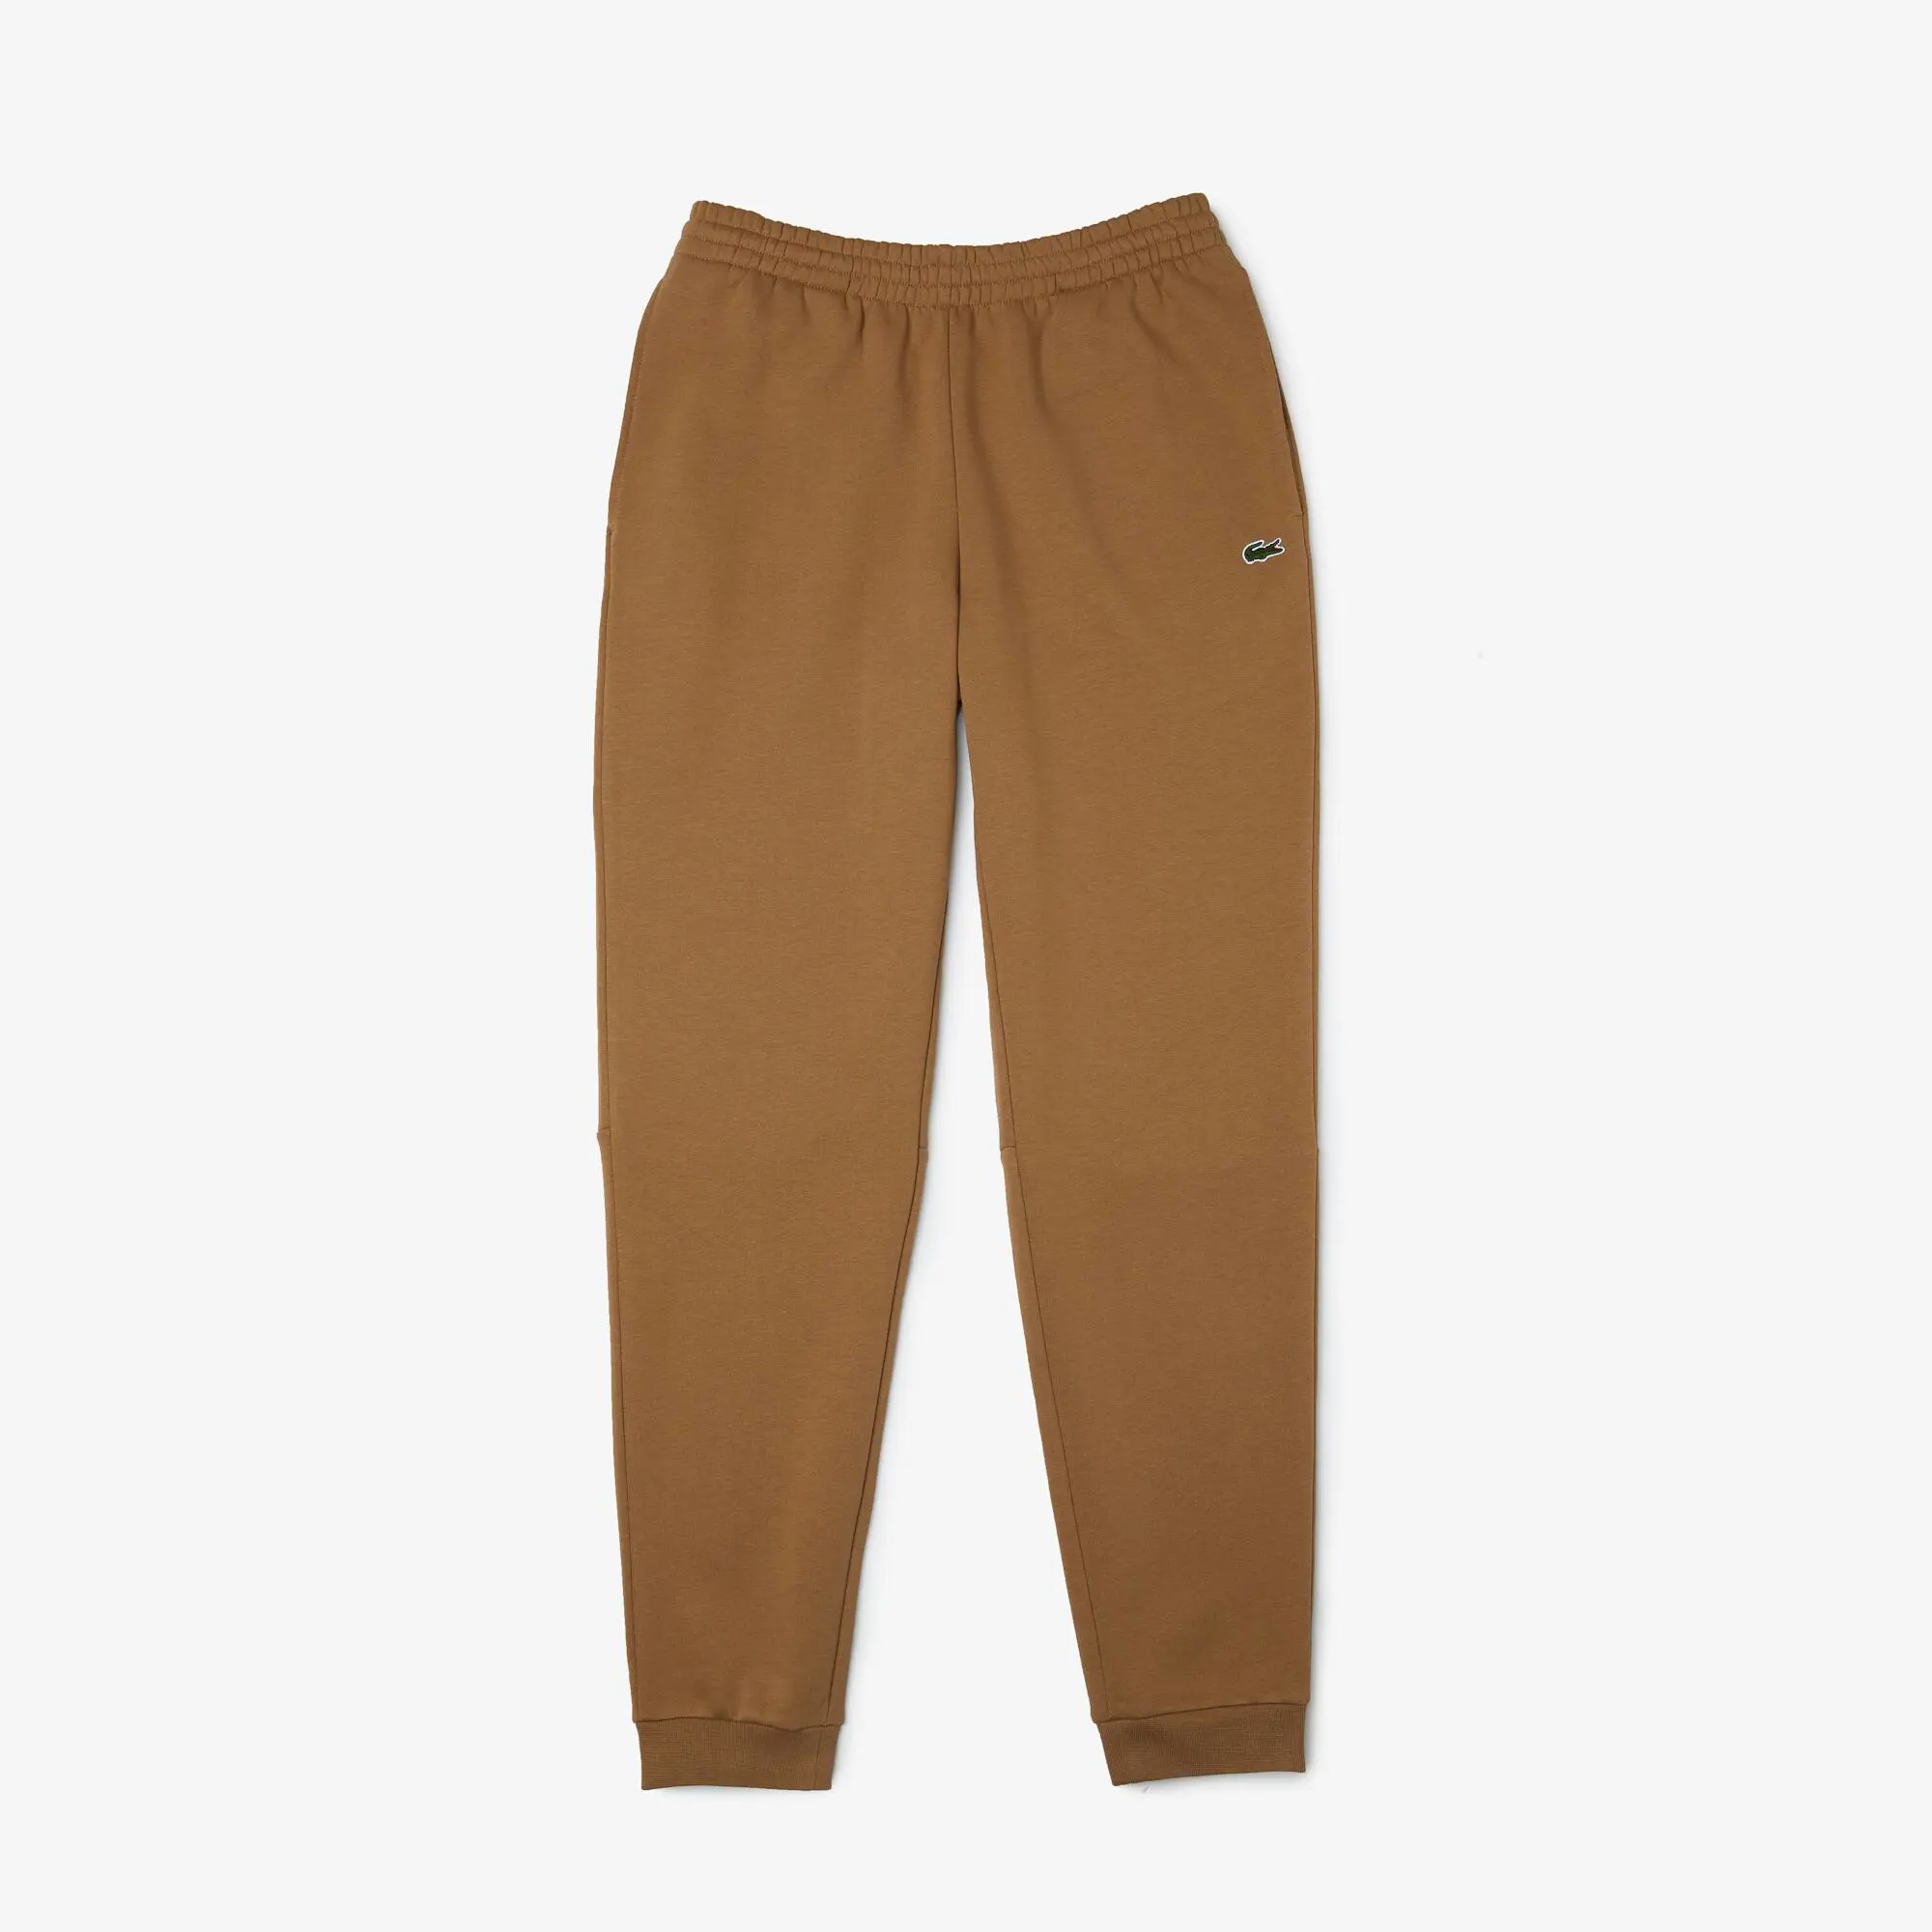 Lacoste Men’s Organic Cotton Sweatpants. 2